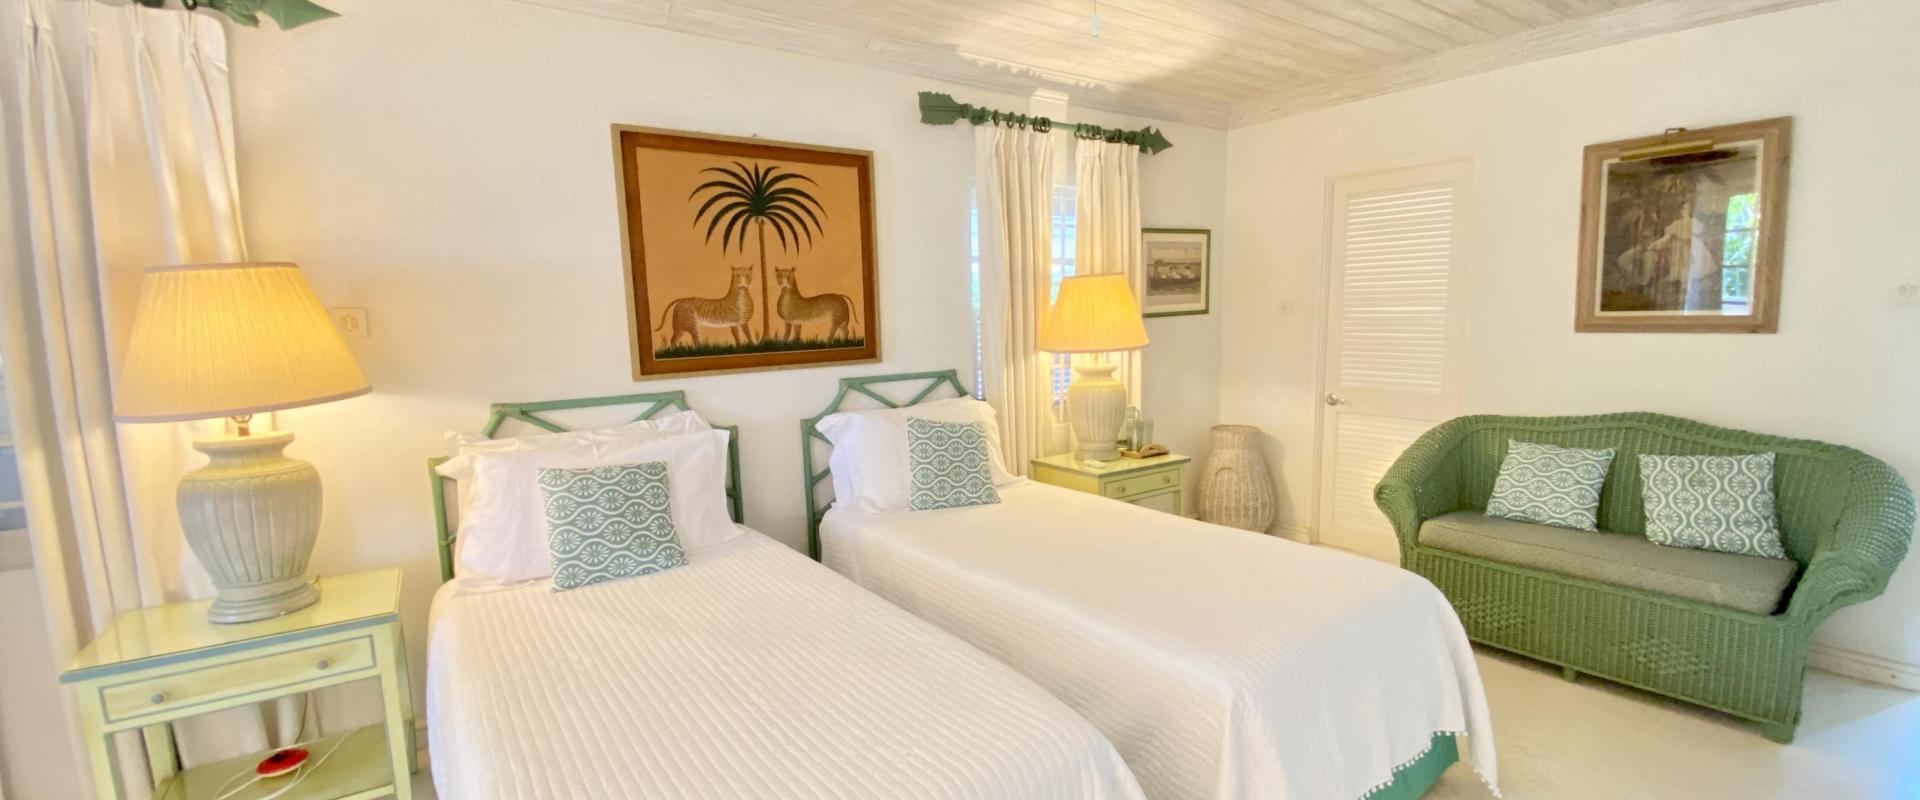 Beachfront Barbados Villa Rental Seascape Bedroom 4